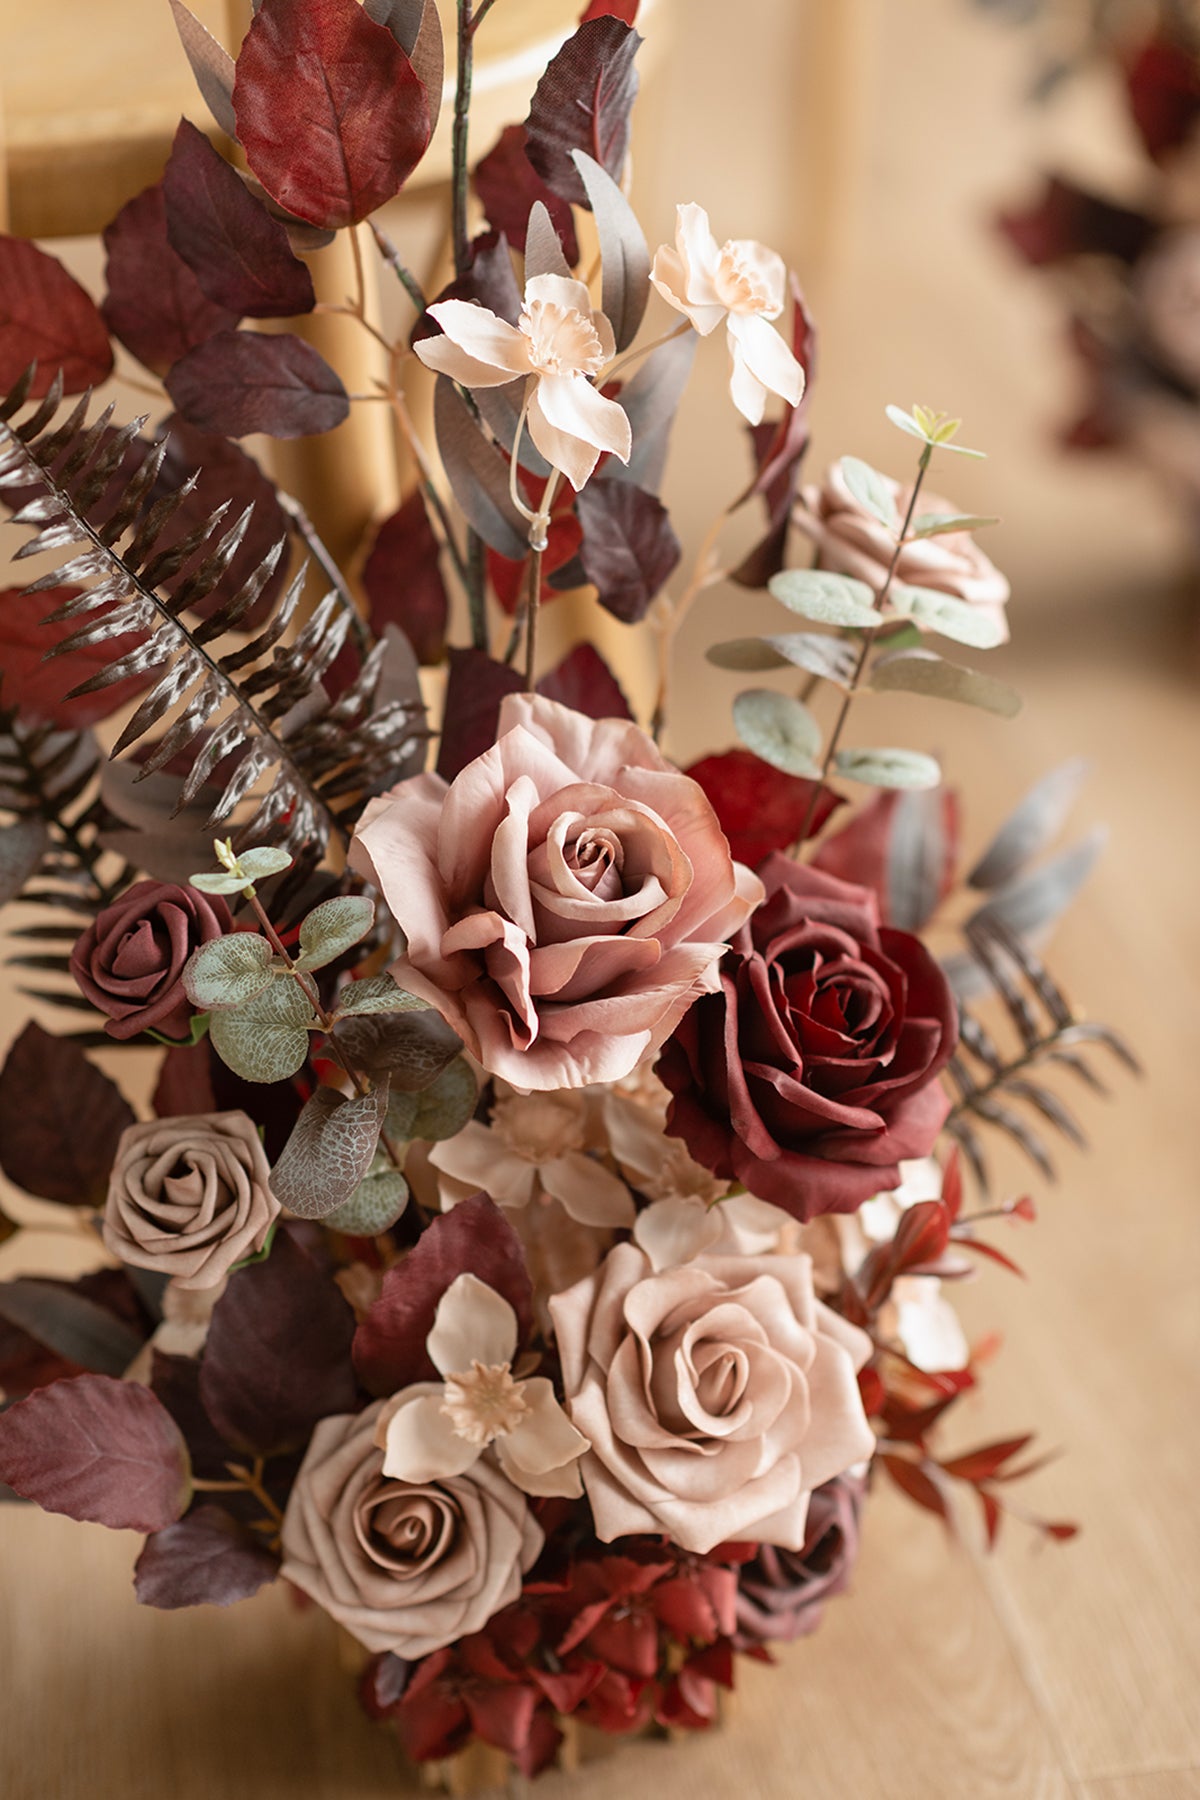 Wedding Aisle Runner Flower Arrangement in Burgundy & Dusty Rose